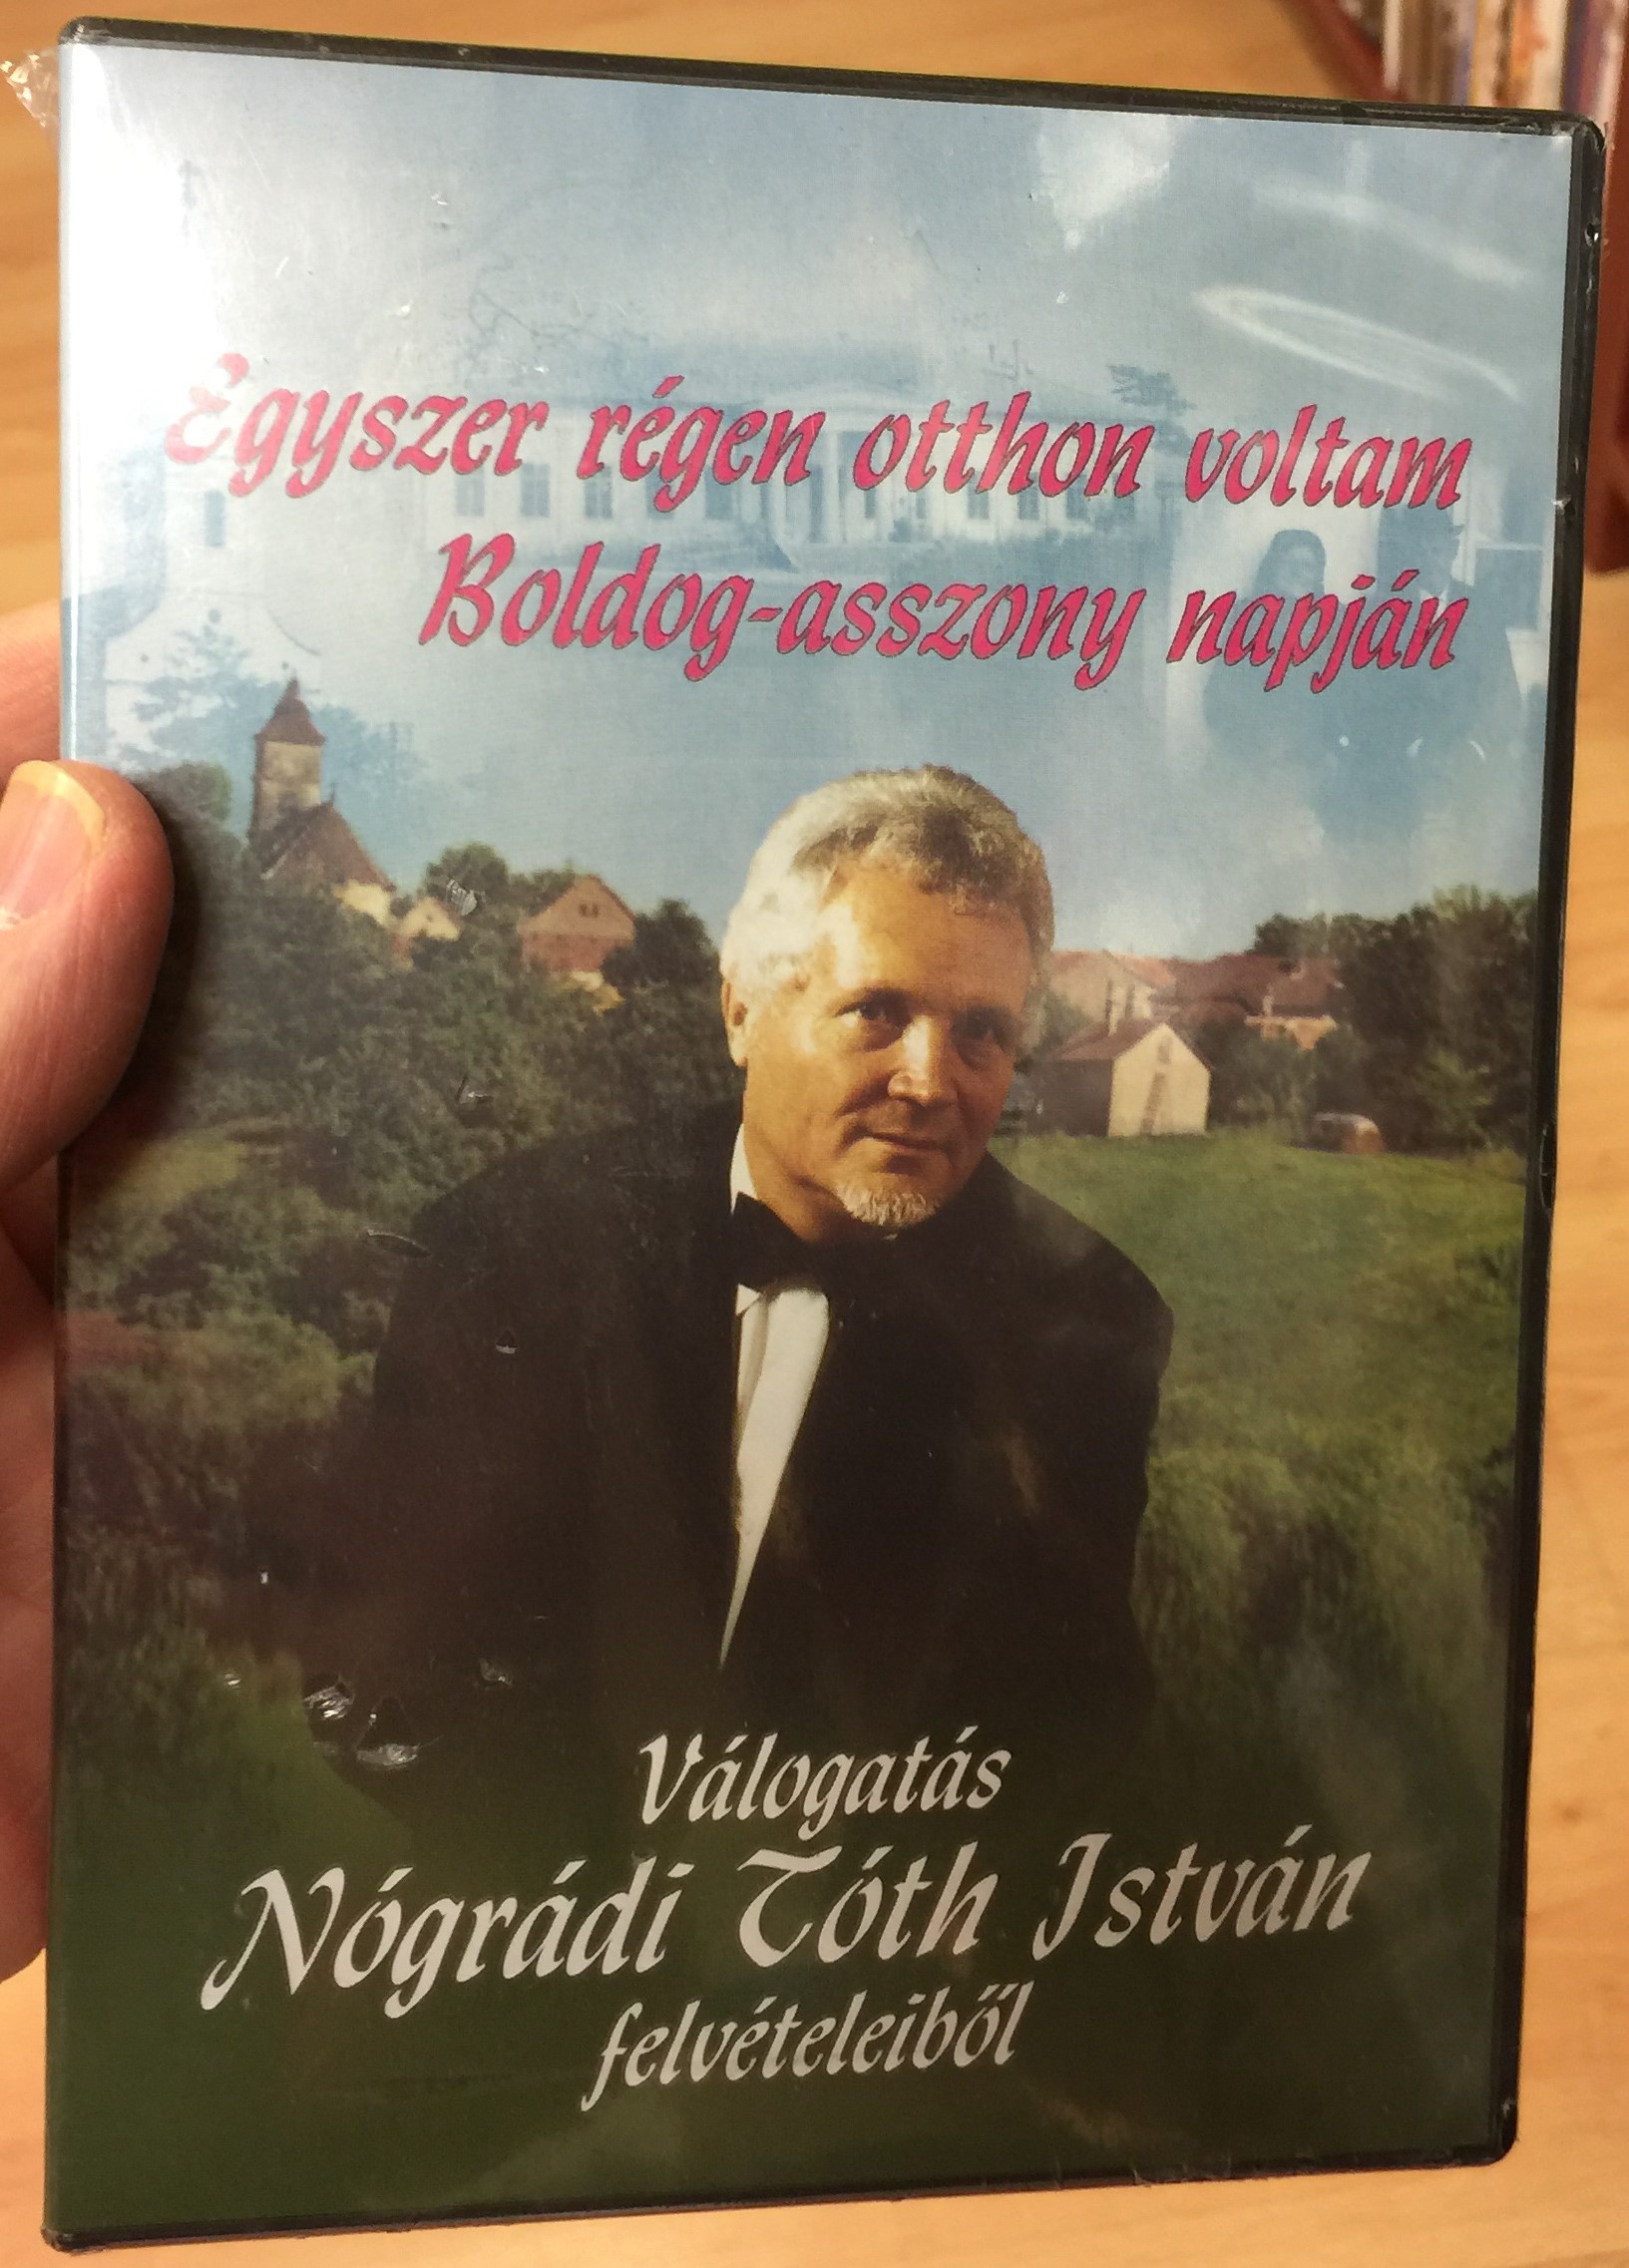 Nógrádi Tóth István - Egyszer régen otthon voltam 1.JPG